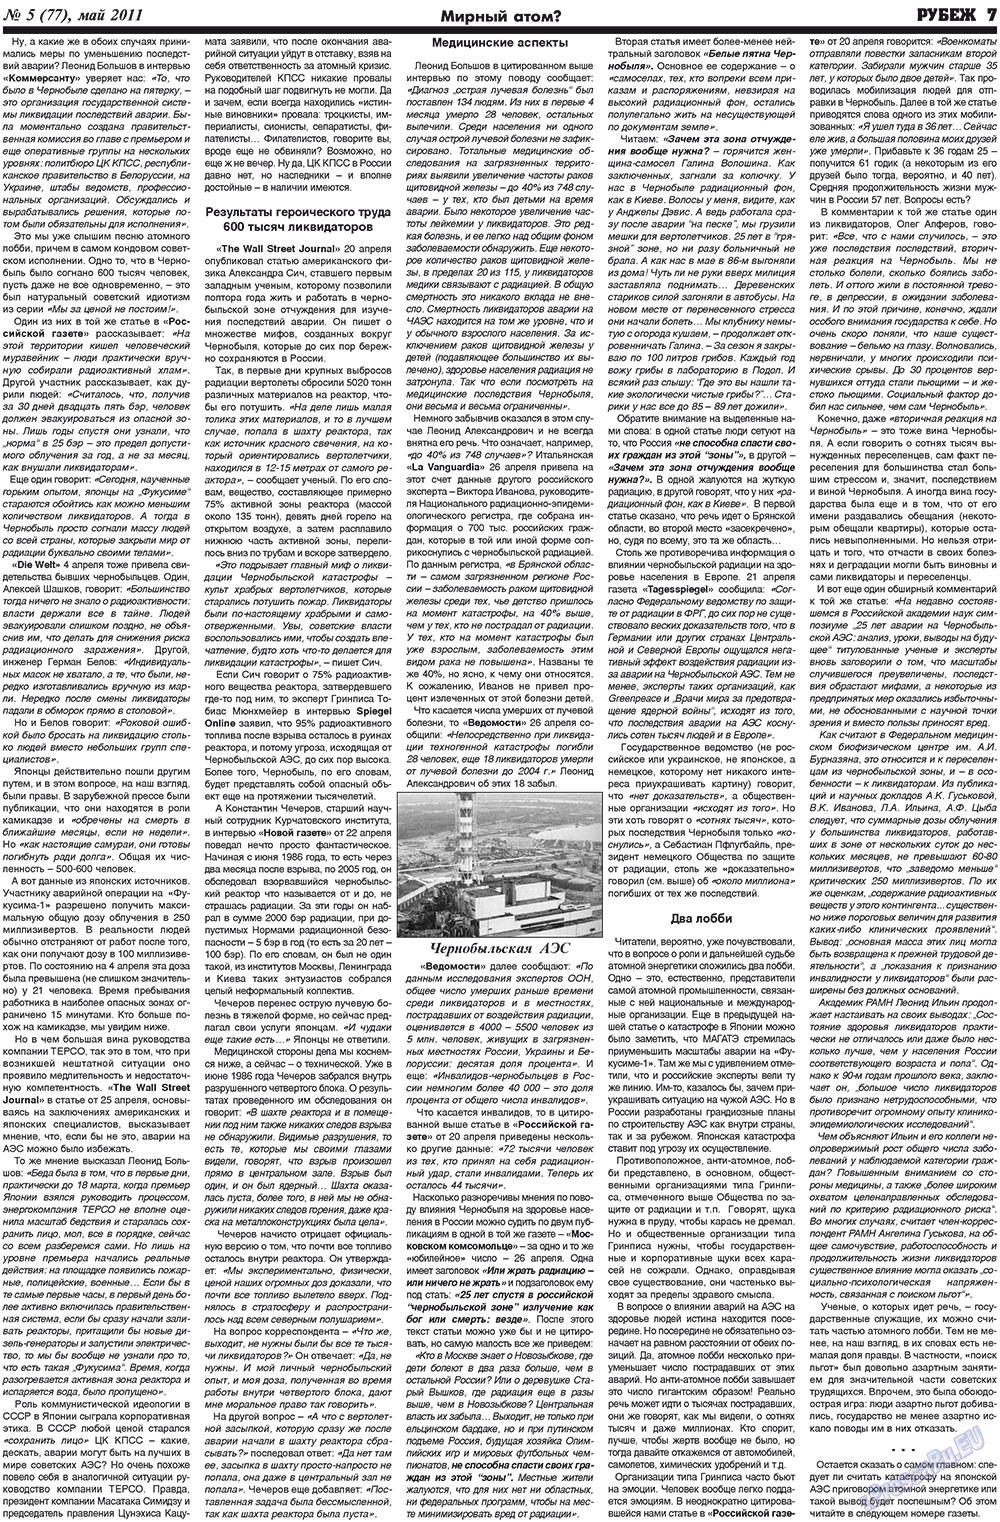 Рубеж (газета). 2011 год, номер 5, стр. 7